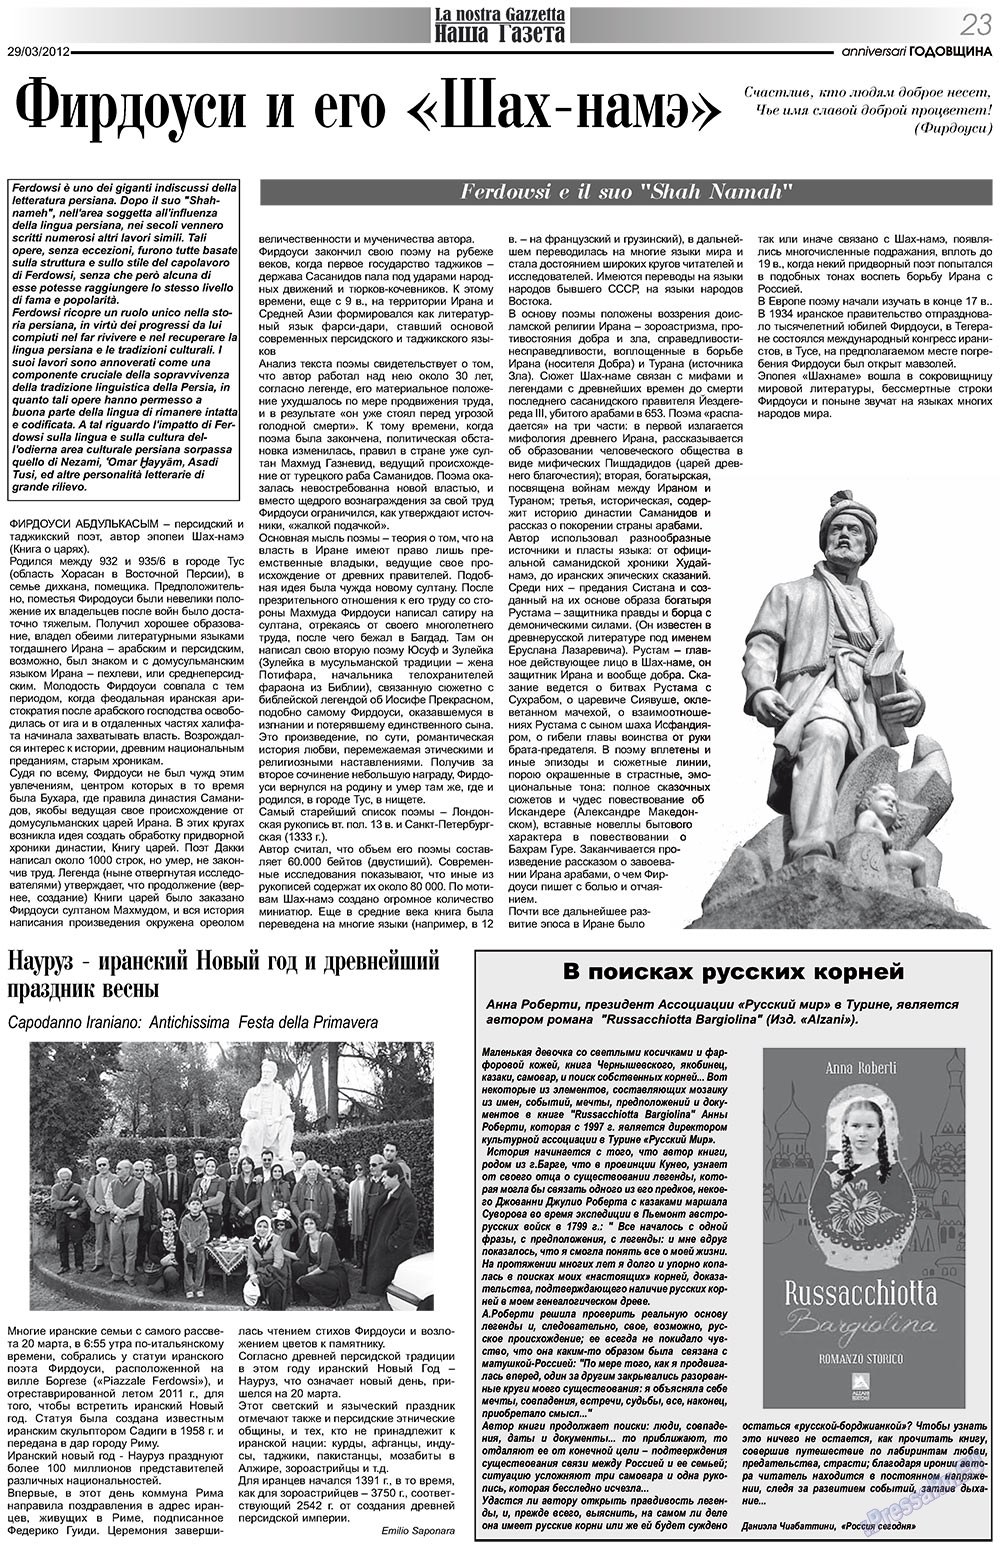 Nascha Gazeta (Zeitung). 2012 Jahr, Ausgabe 153, Seite 23